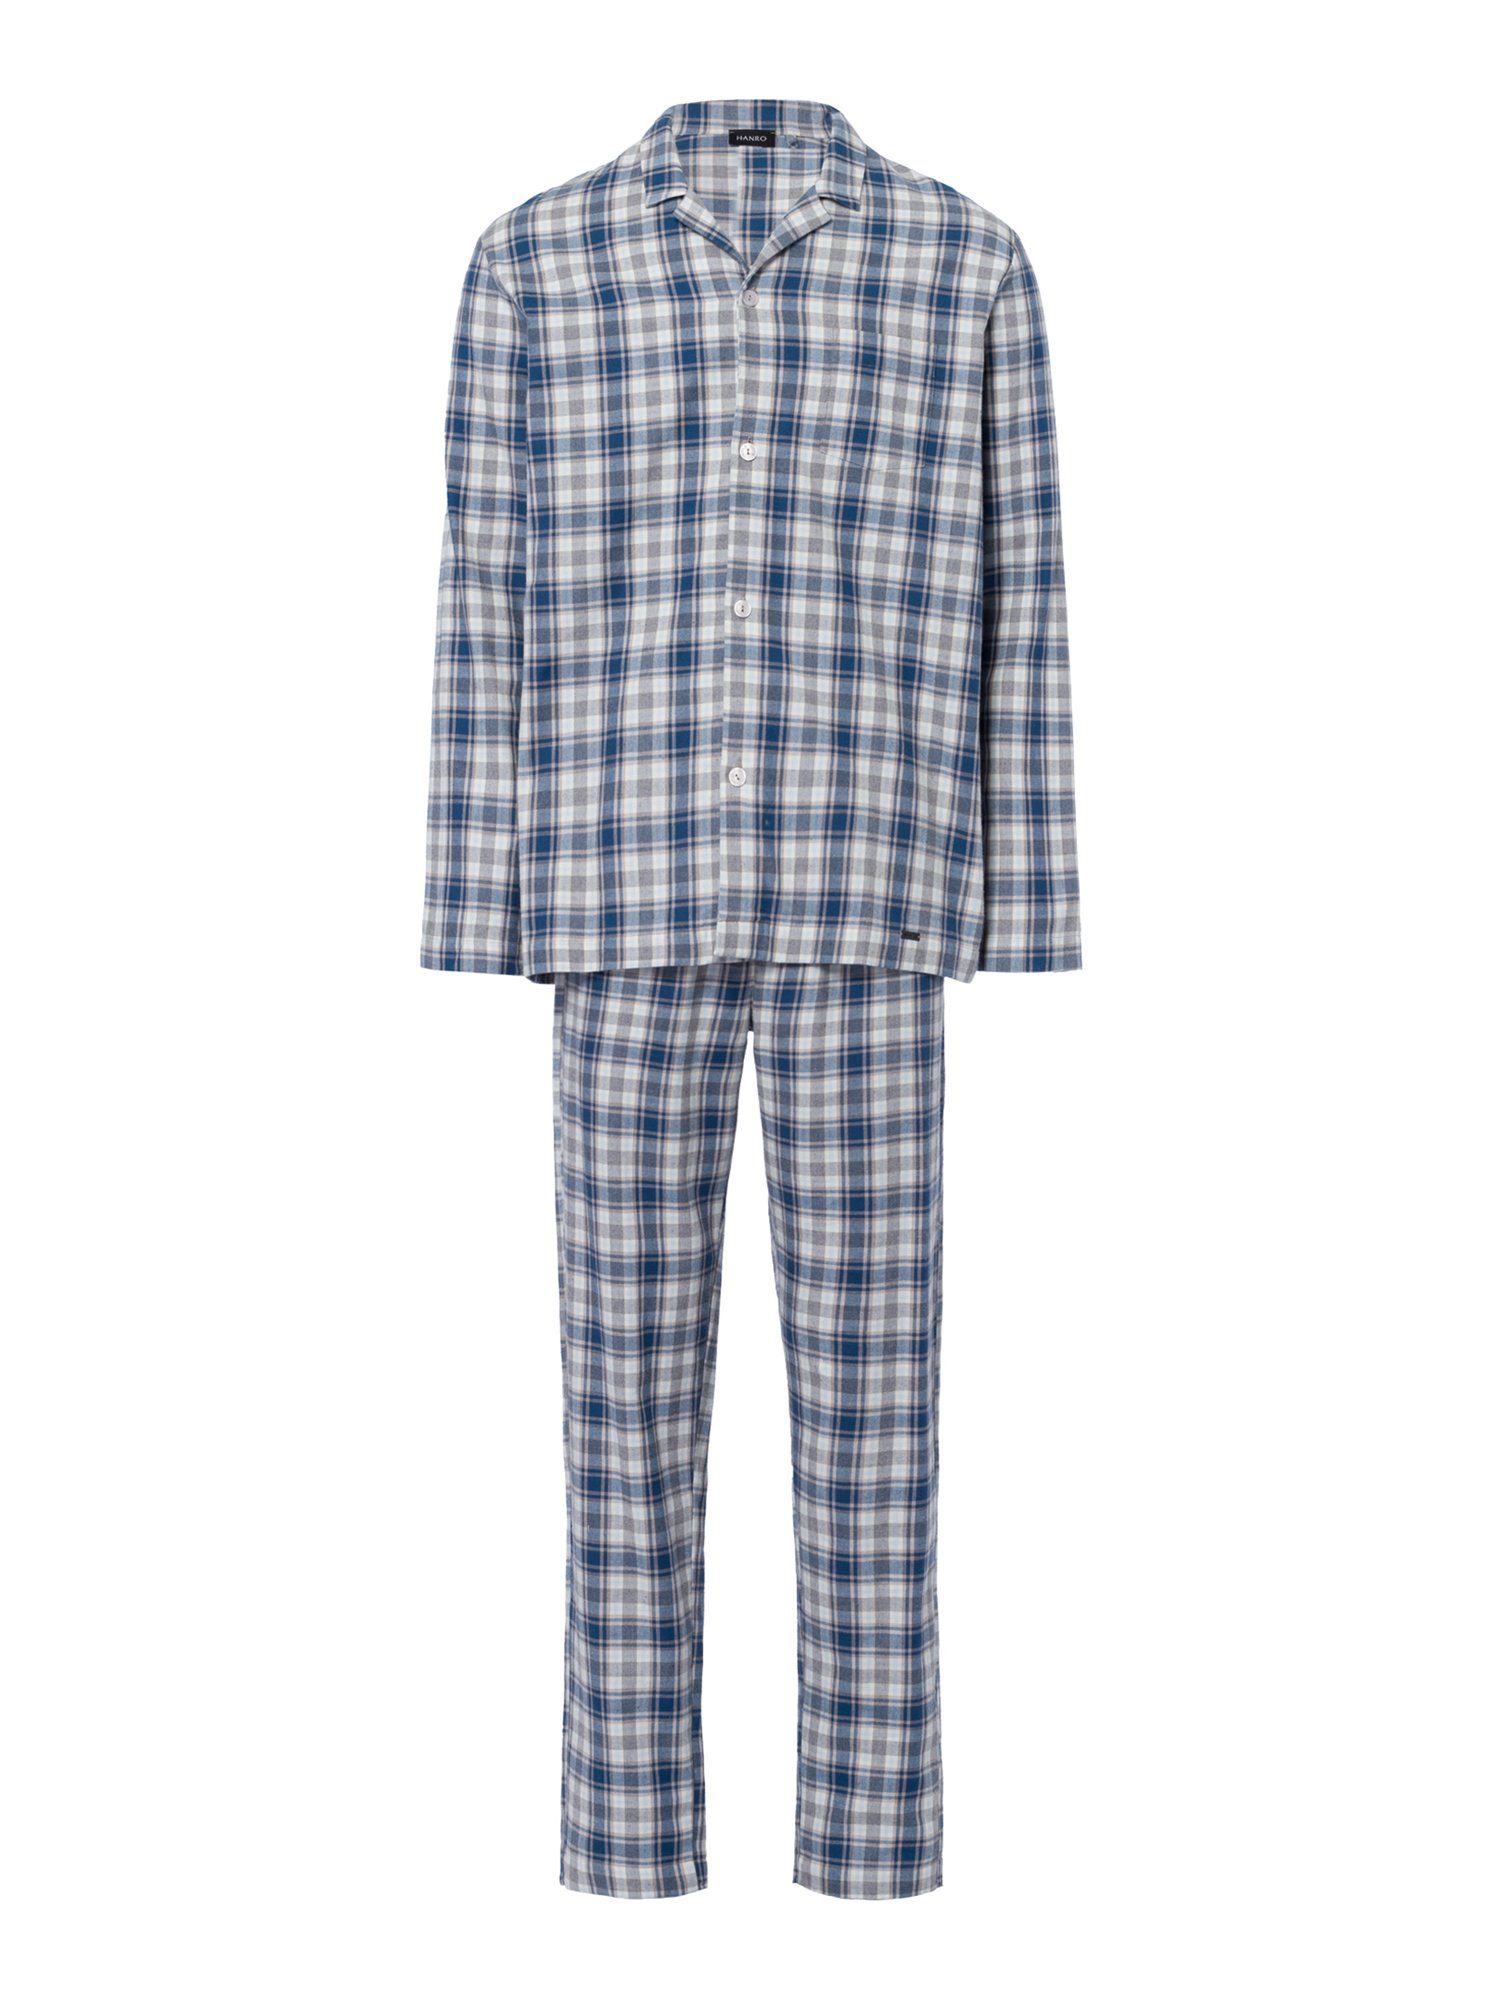 Hanro Pyjama Cozy Comfort cozy check